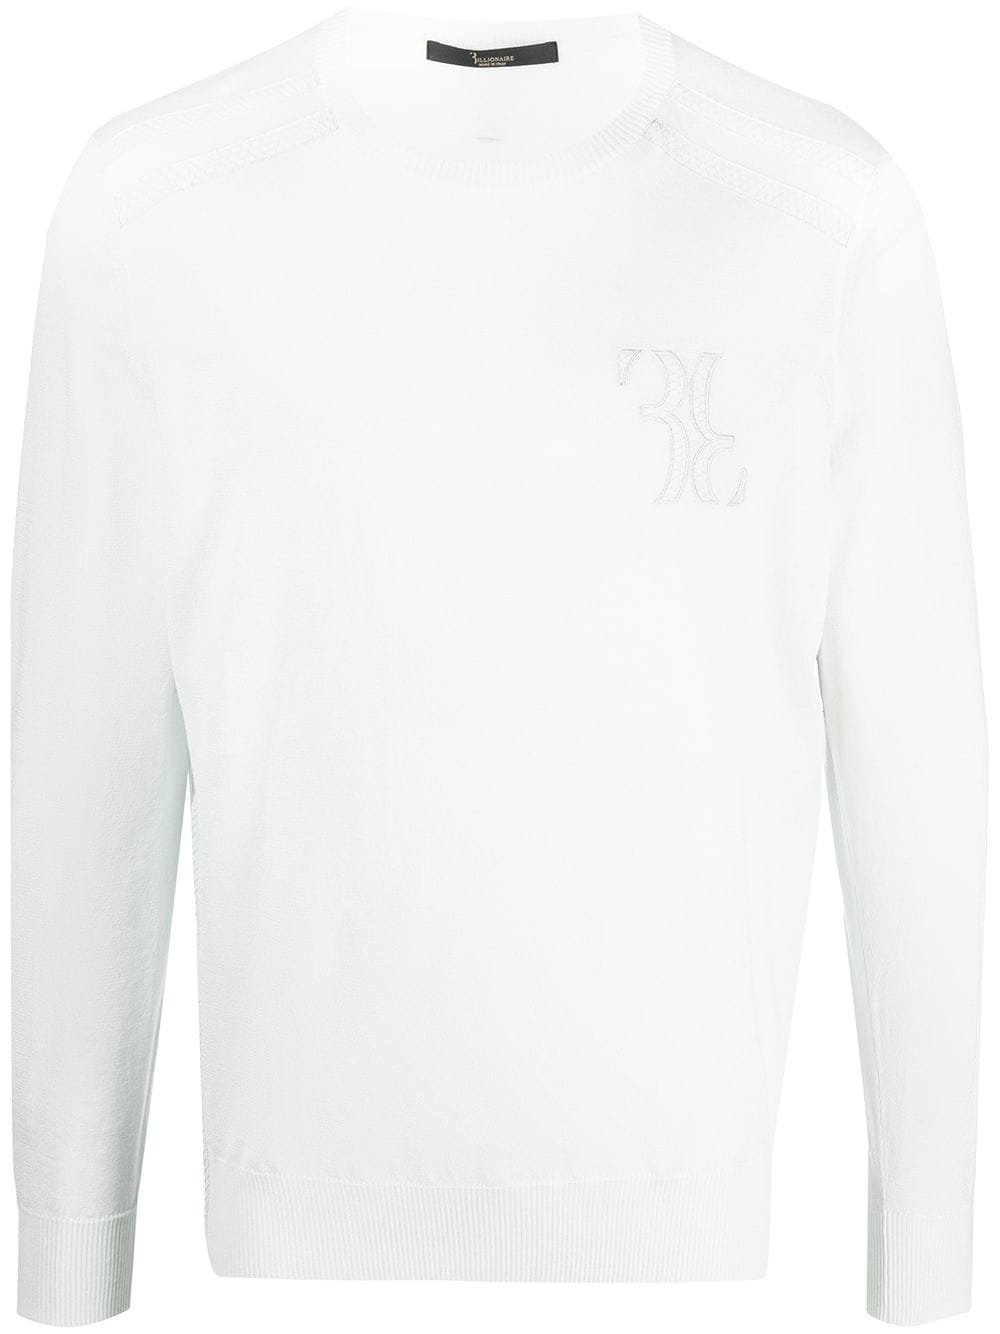 фото Billionaire свитер с вышитым логотипом